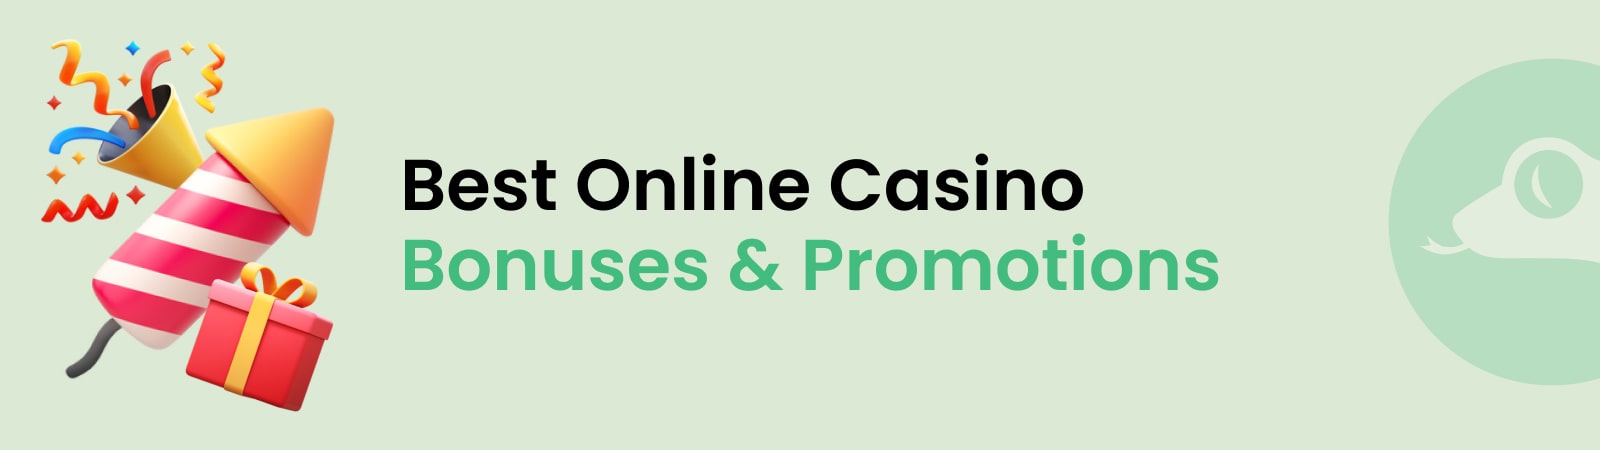 best rish online casino bonuses promotions